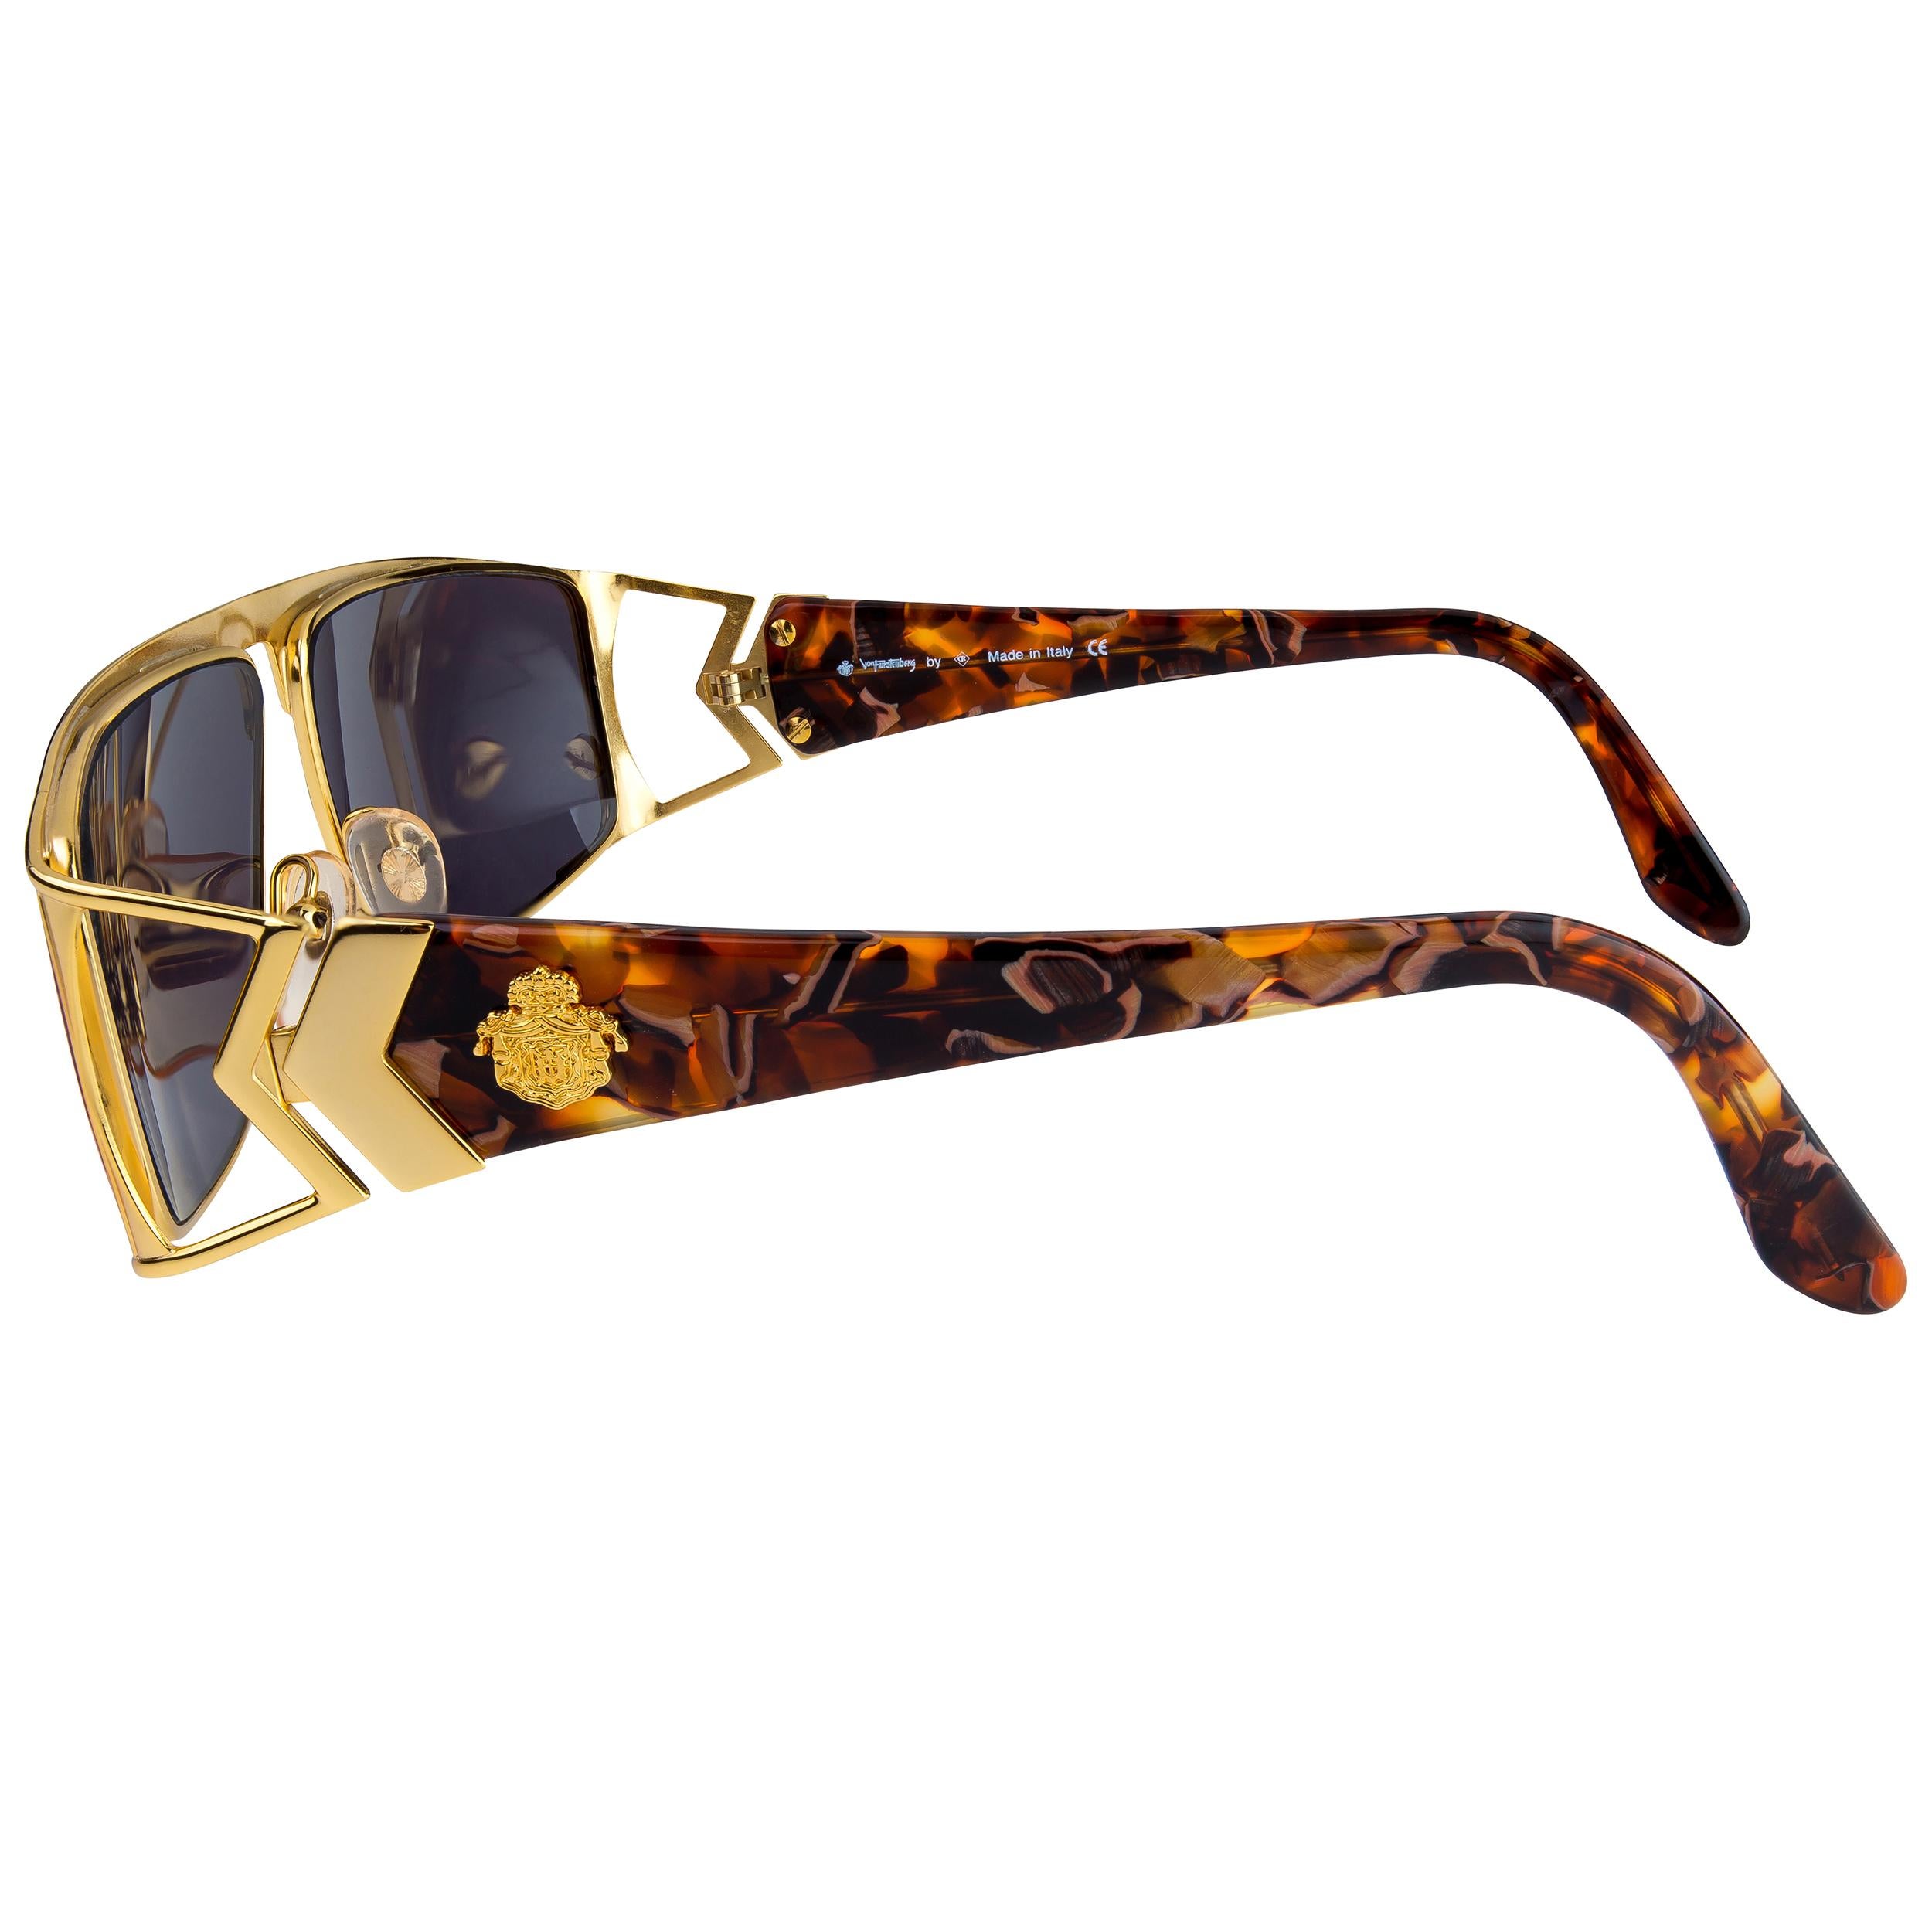 Noir Von Furstenberg lunettes de soleil aviateur dorées, années 80